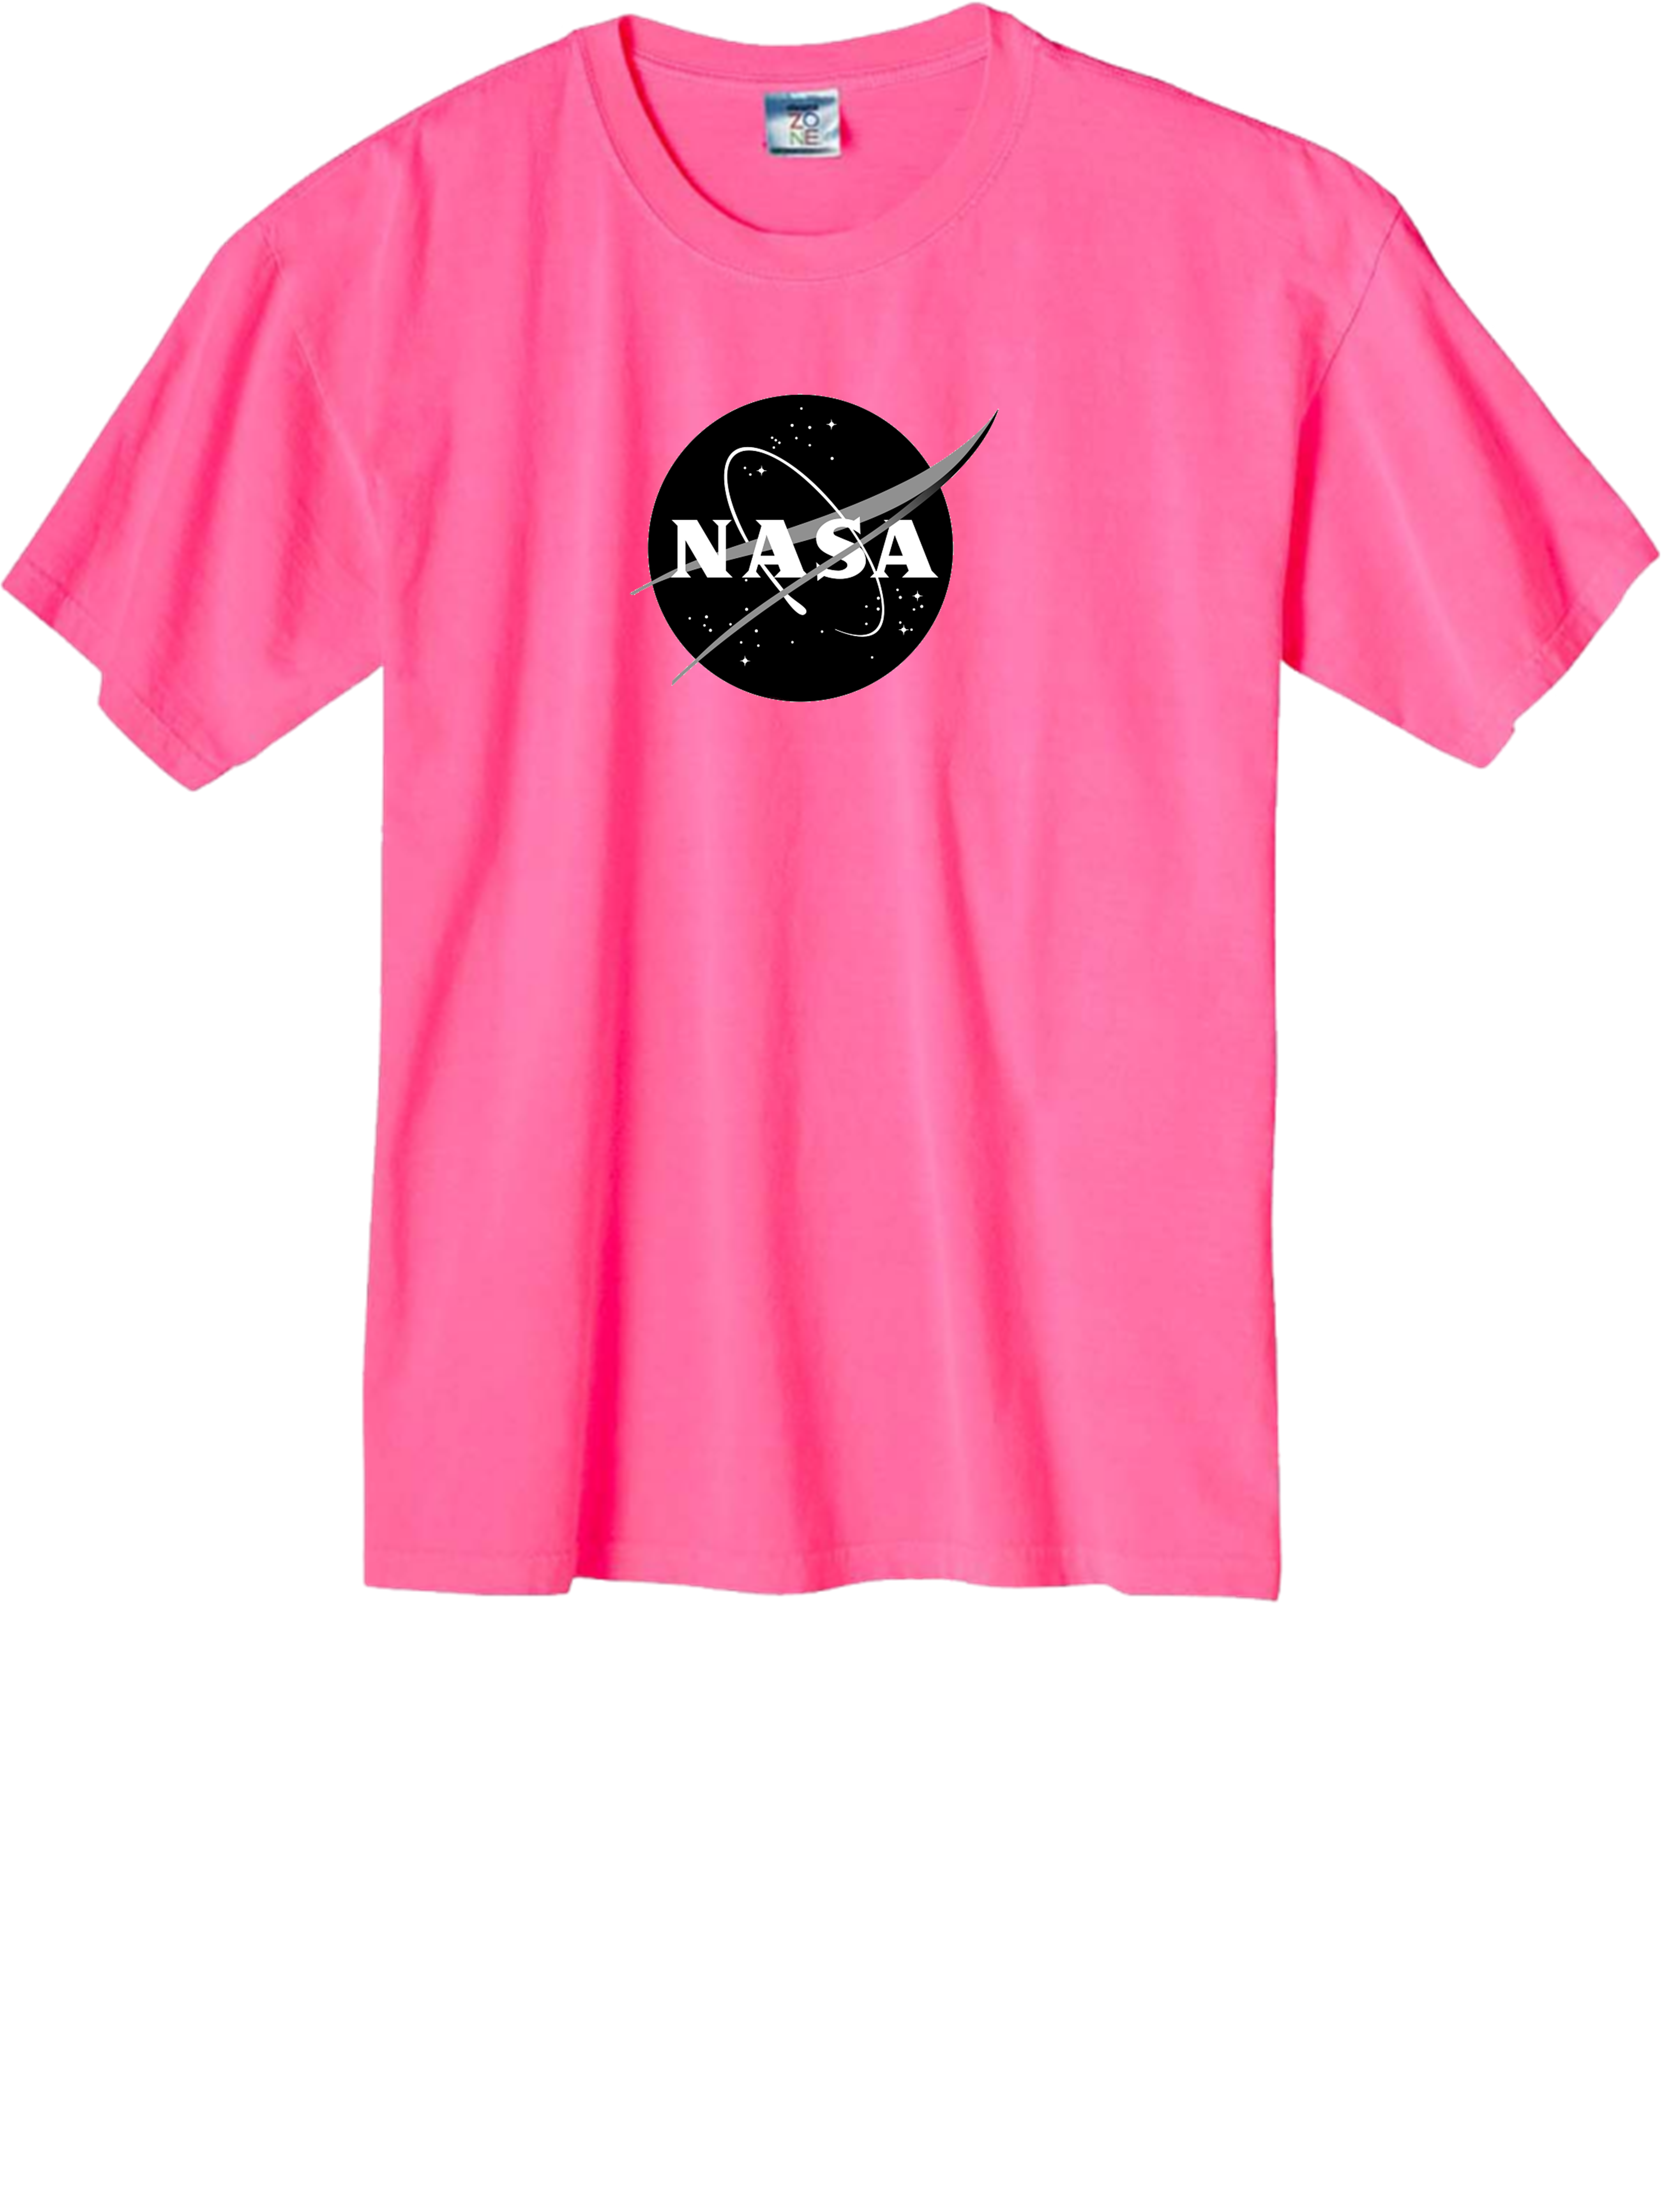 NASA PINK SHIRT.png